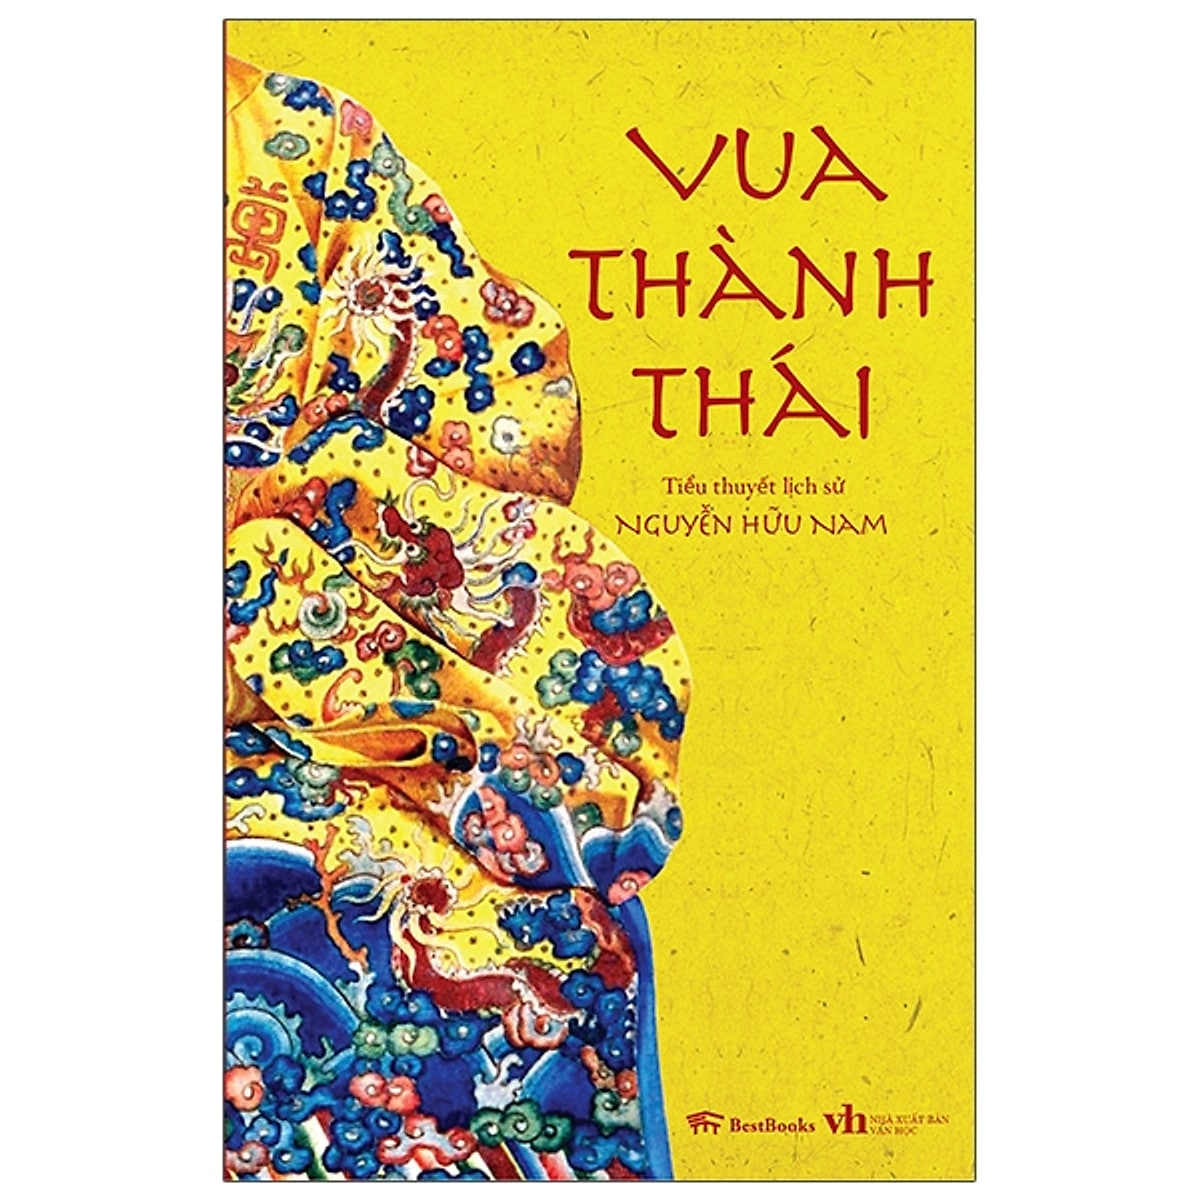 05 Vua Thanh Thai